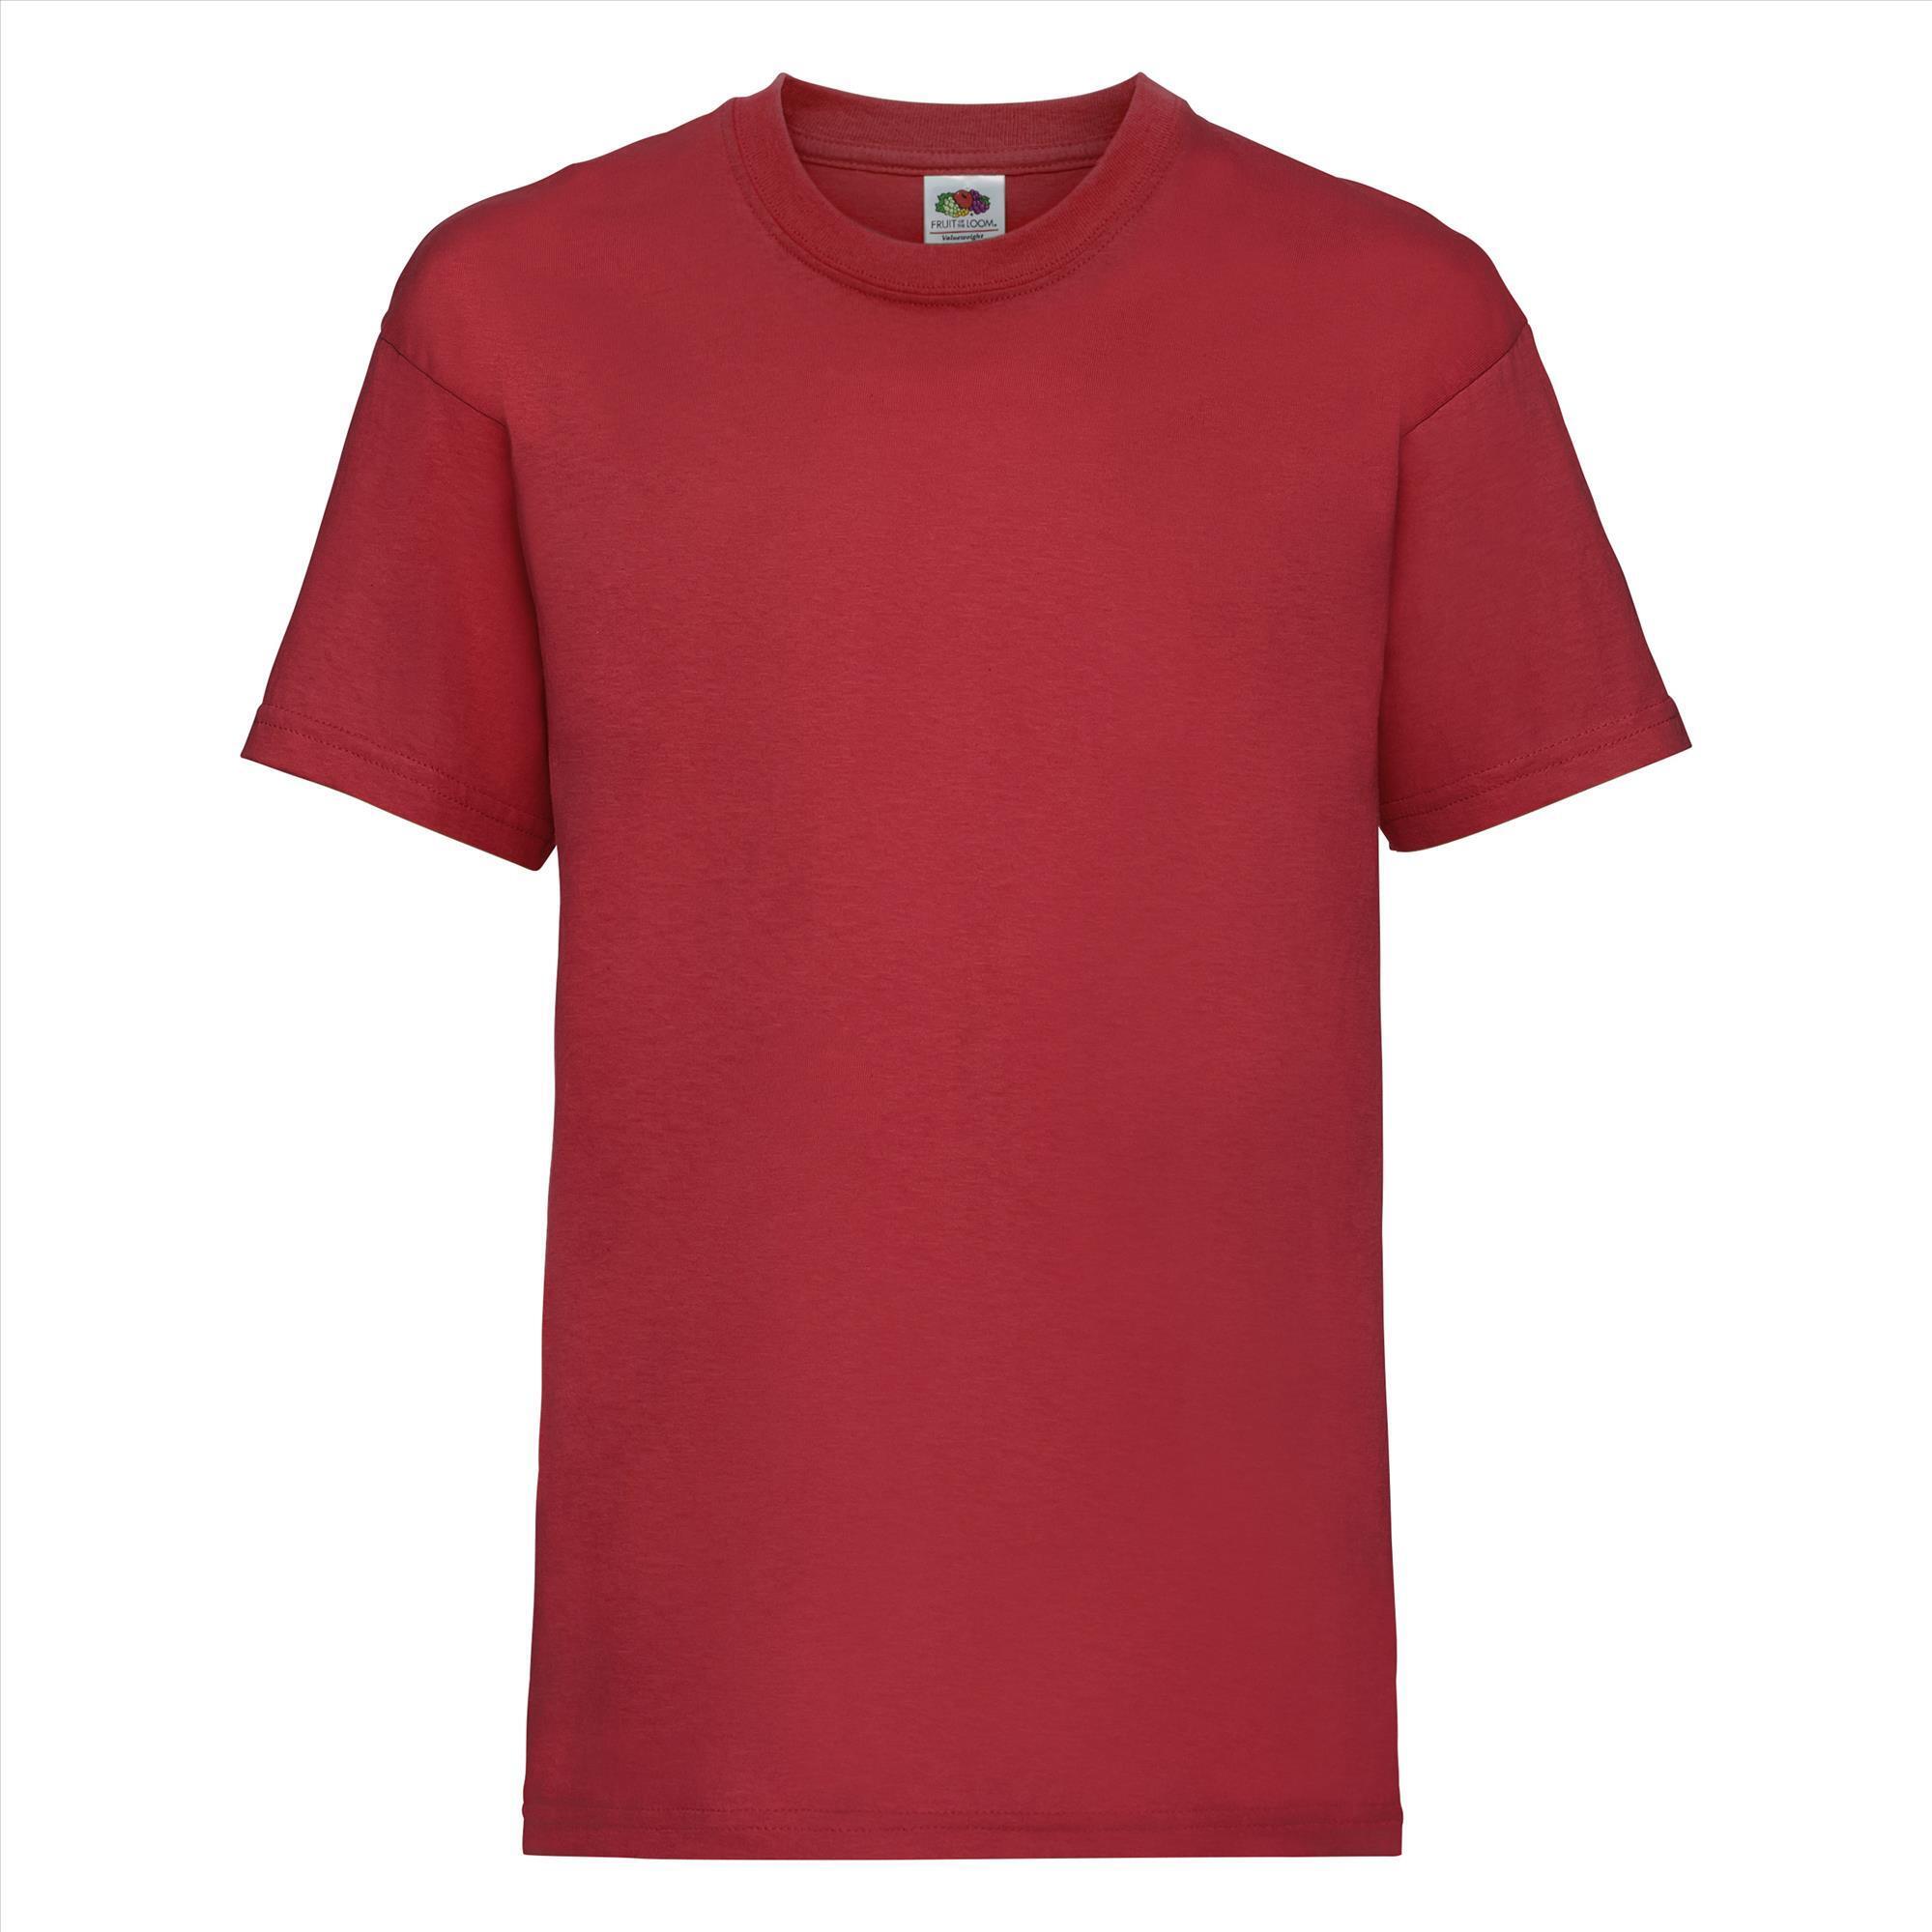 Gepersonaliseerde Kinder T-shirt rood Kinderkleding bedrukken